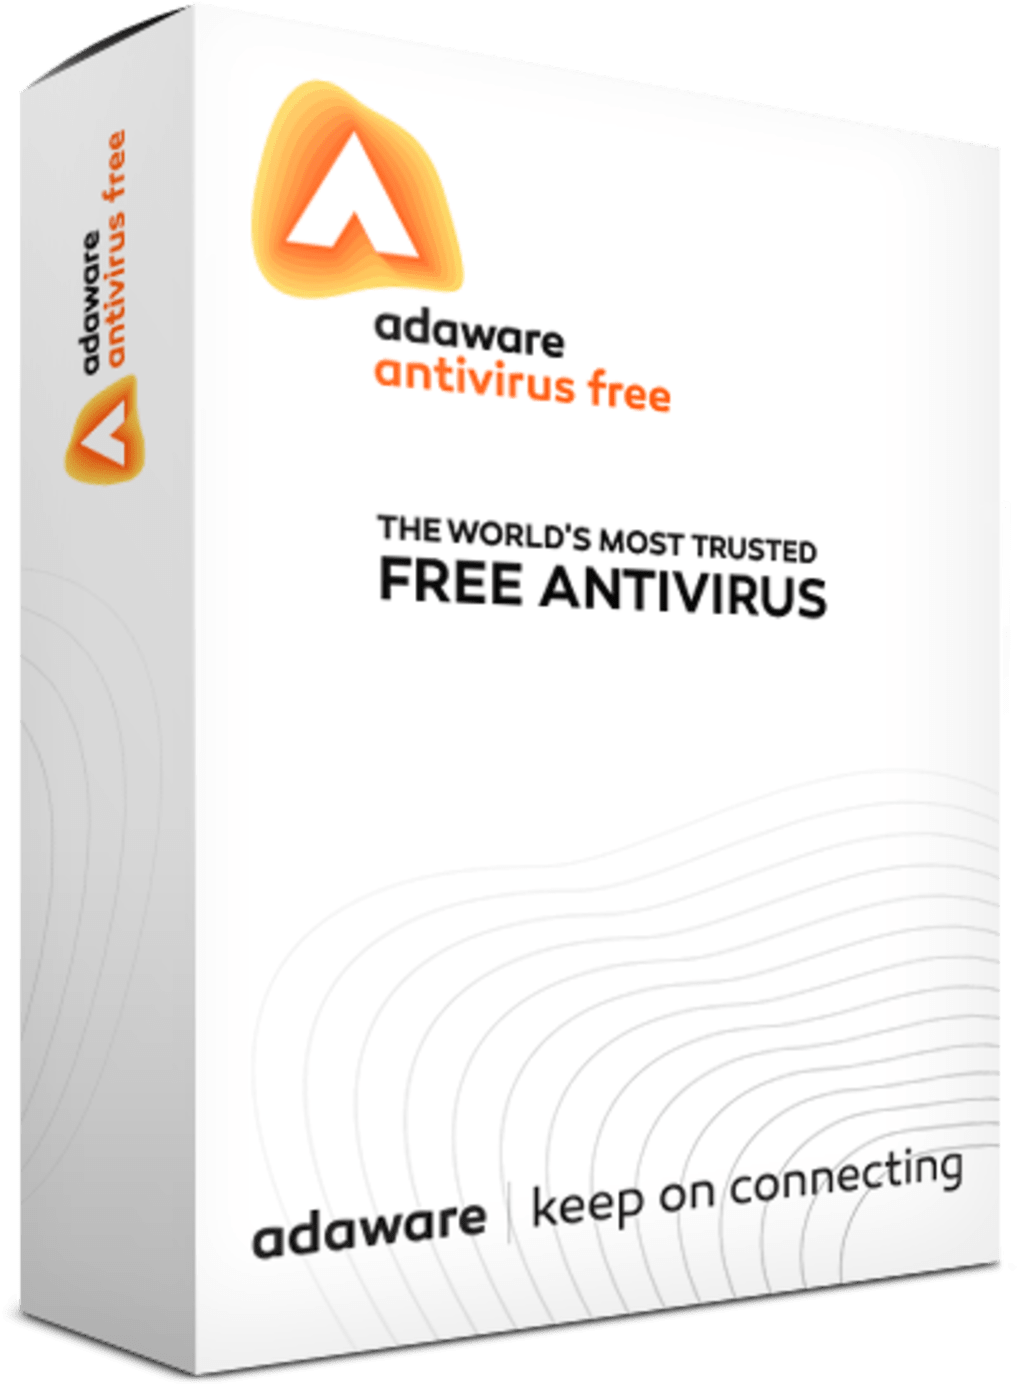 adaware antivirus free.